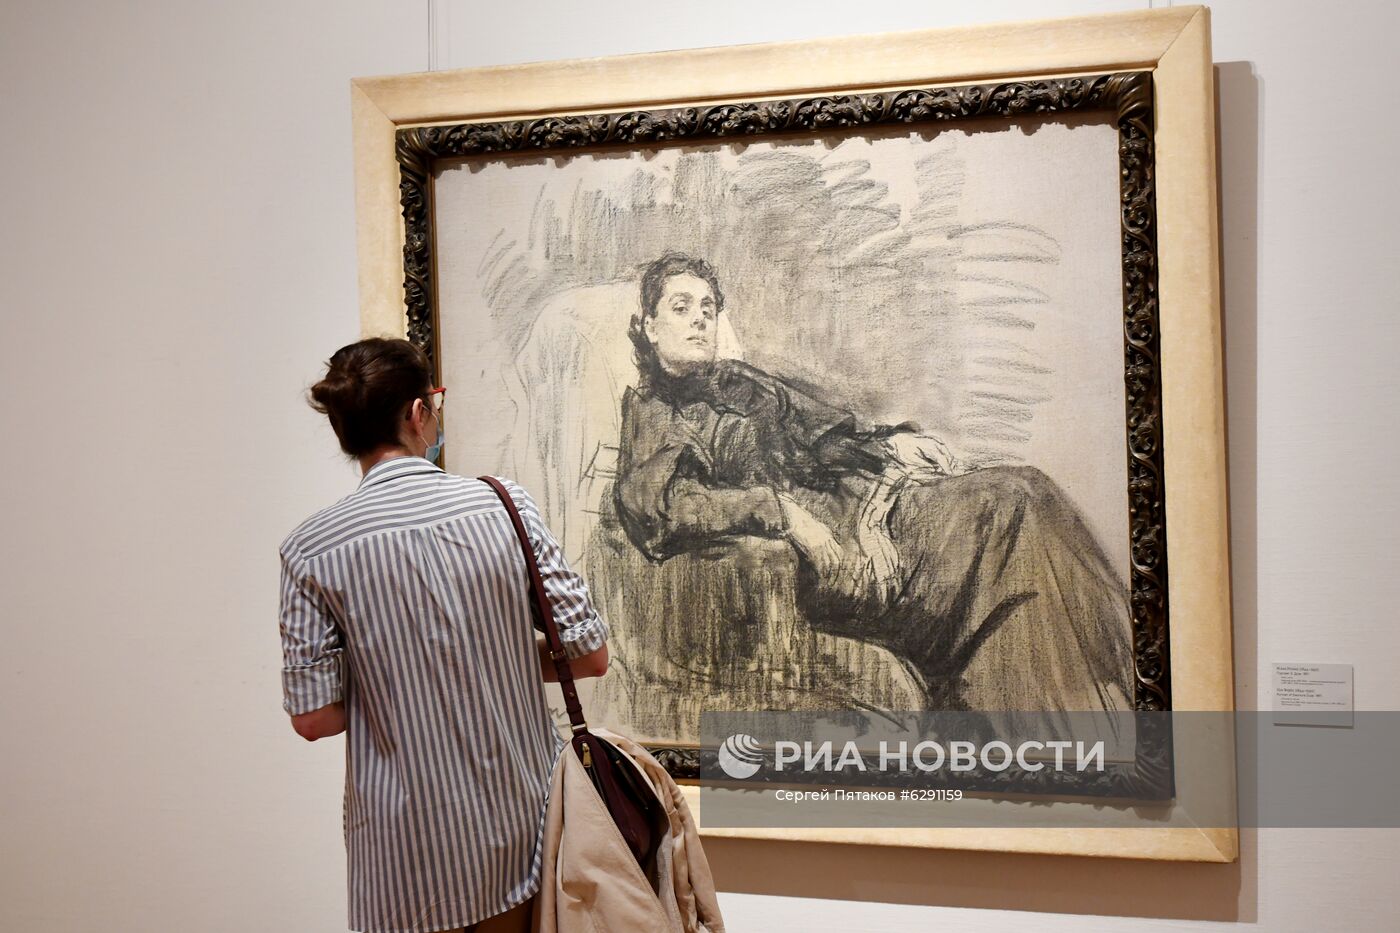 Открытие выставки "Предчувствуя ХХ век" в Третьяковской галерее